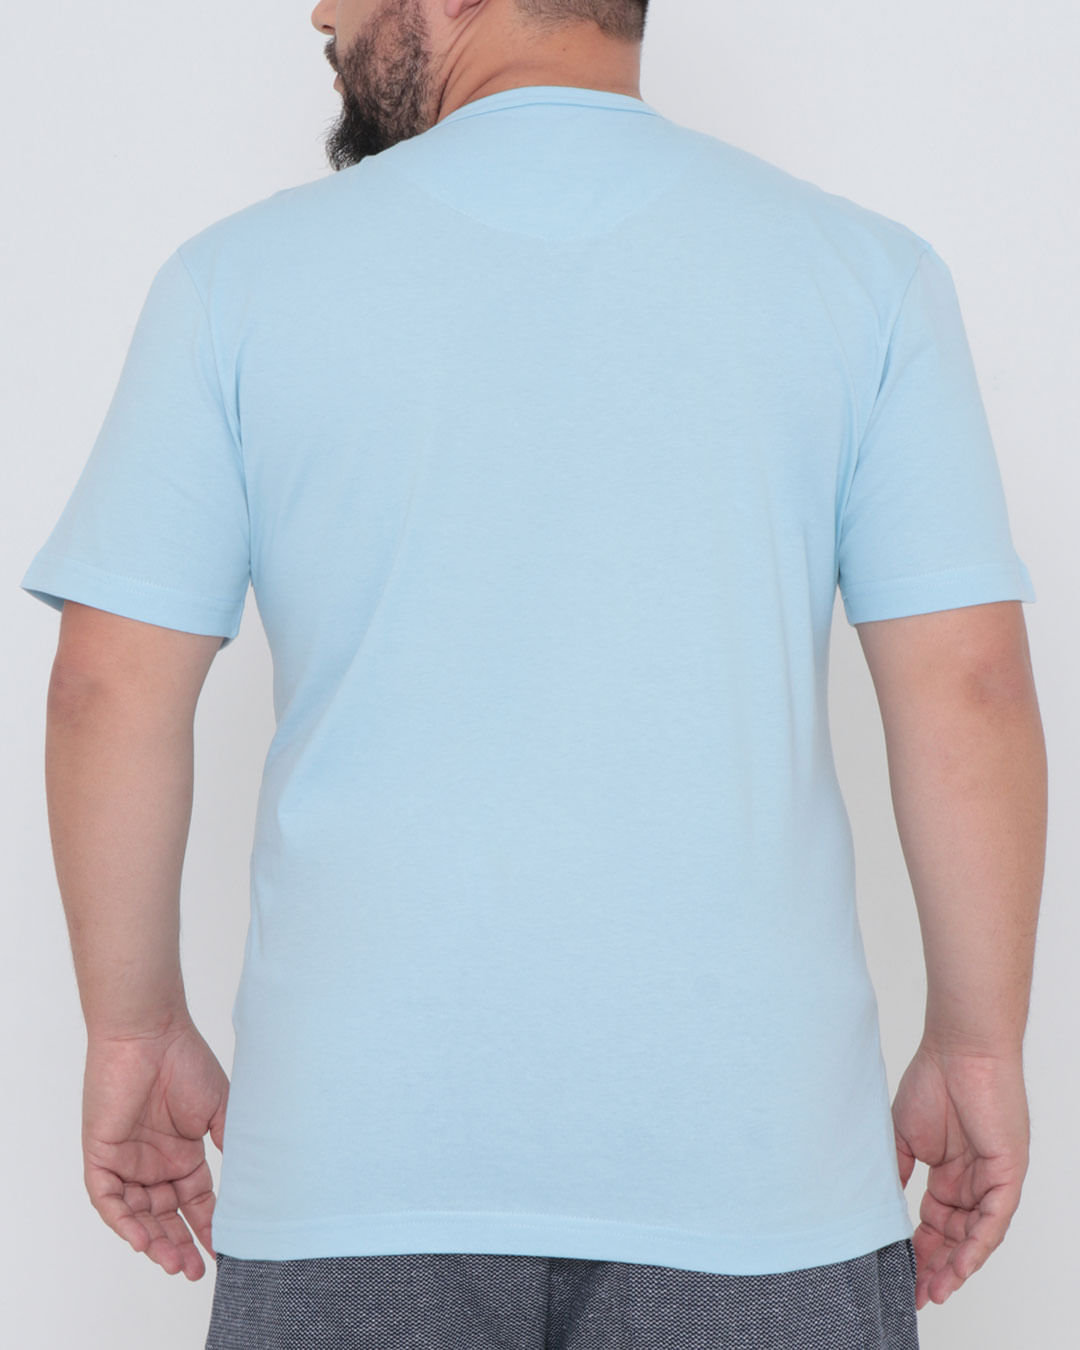 Camiseta-10097-Azul-Plus-Ec---Azul-Claro